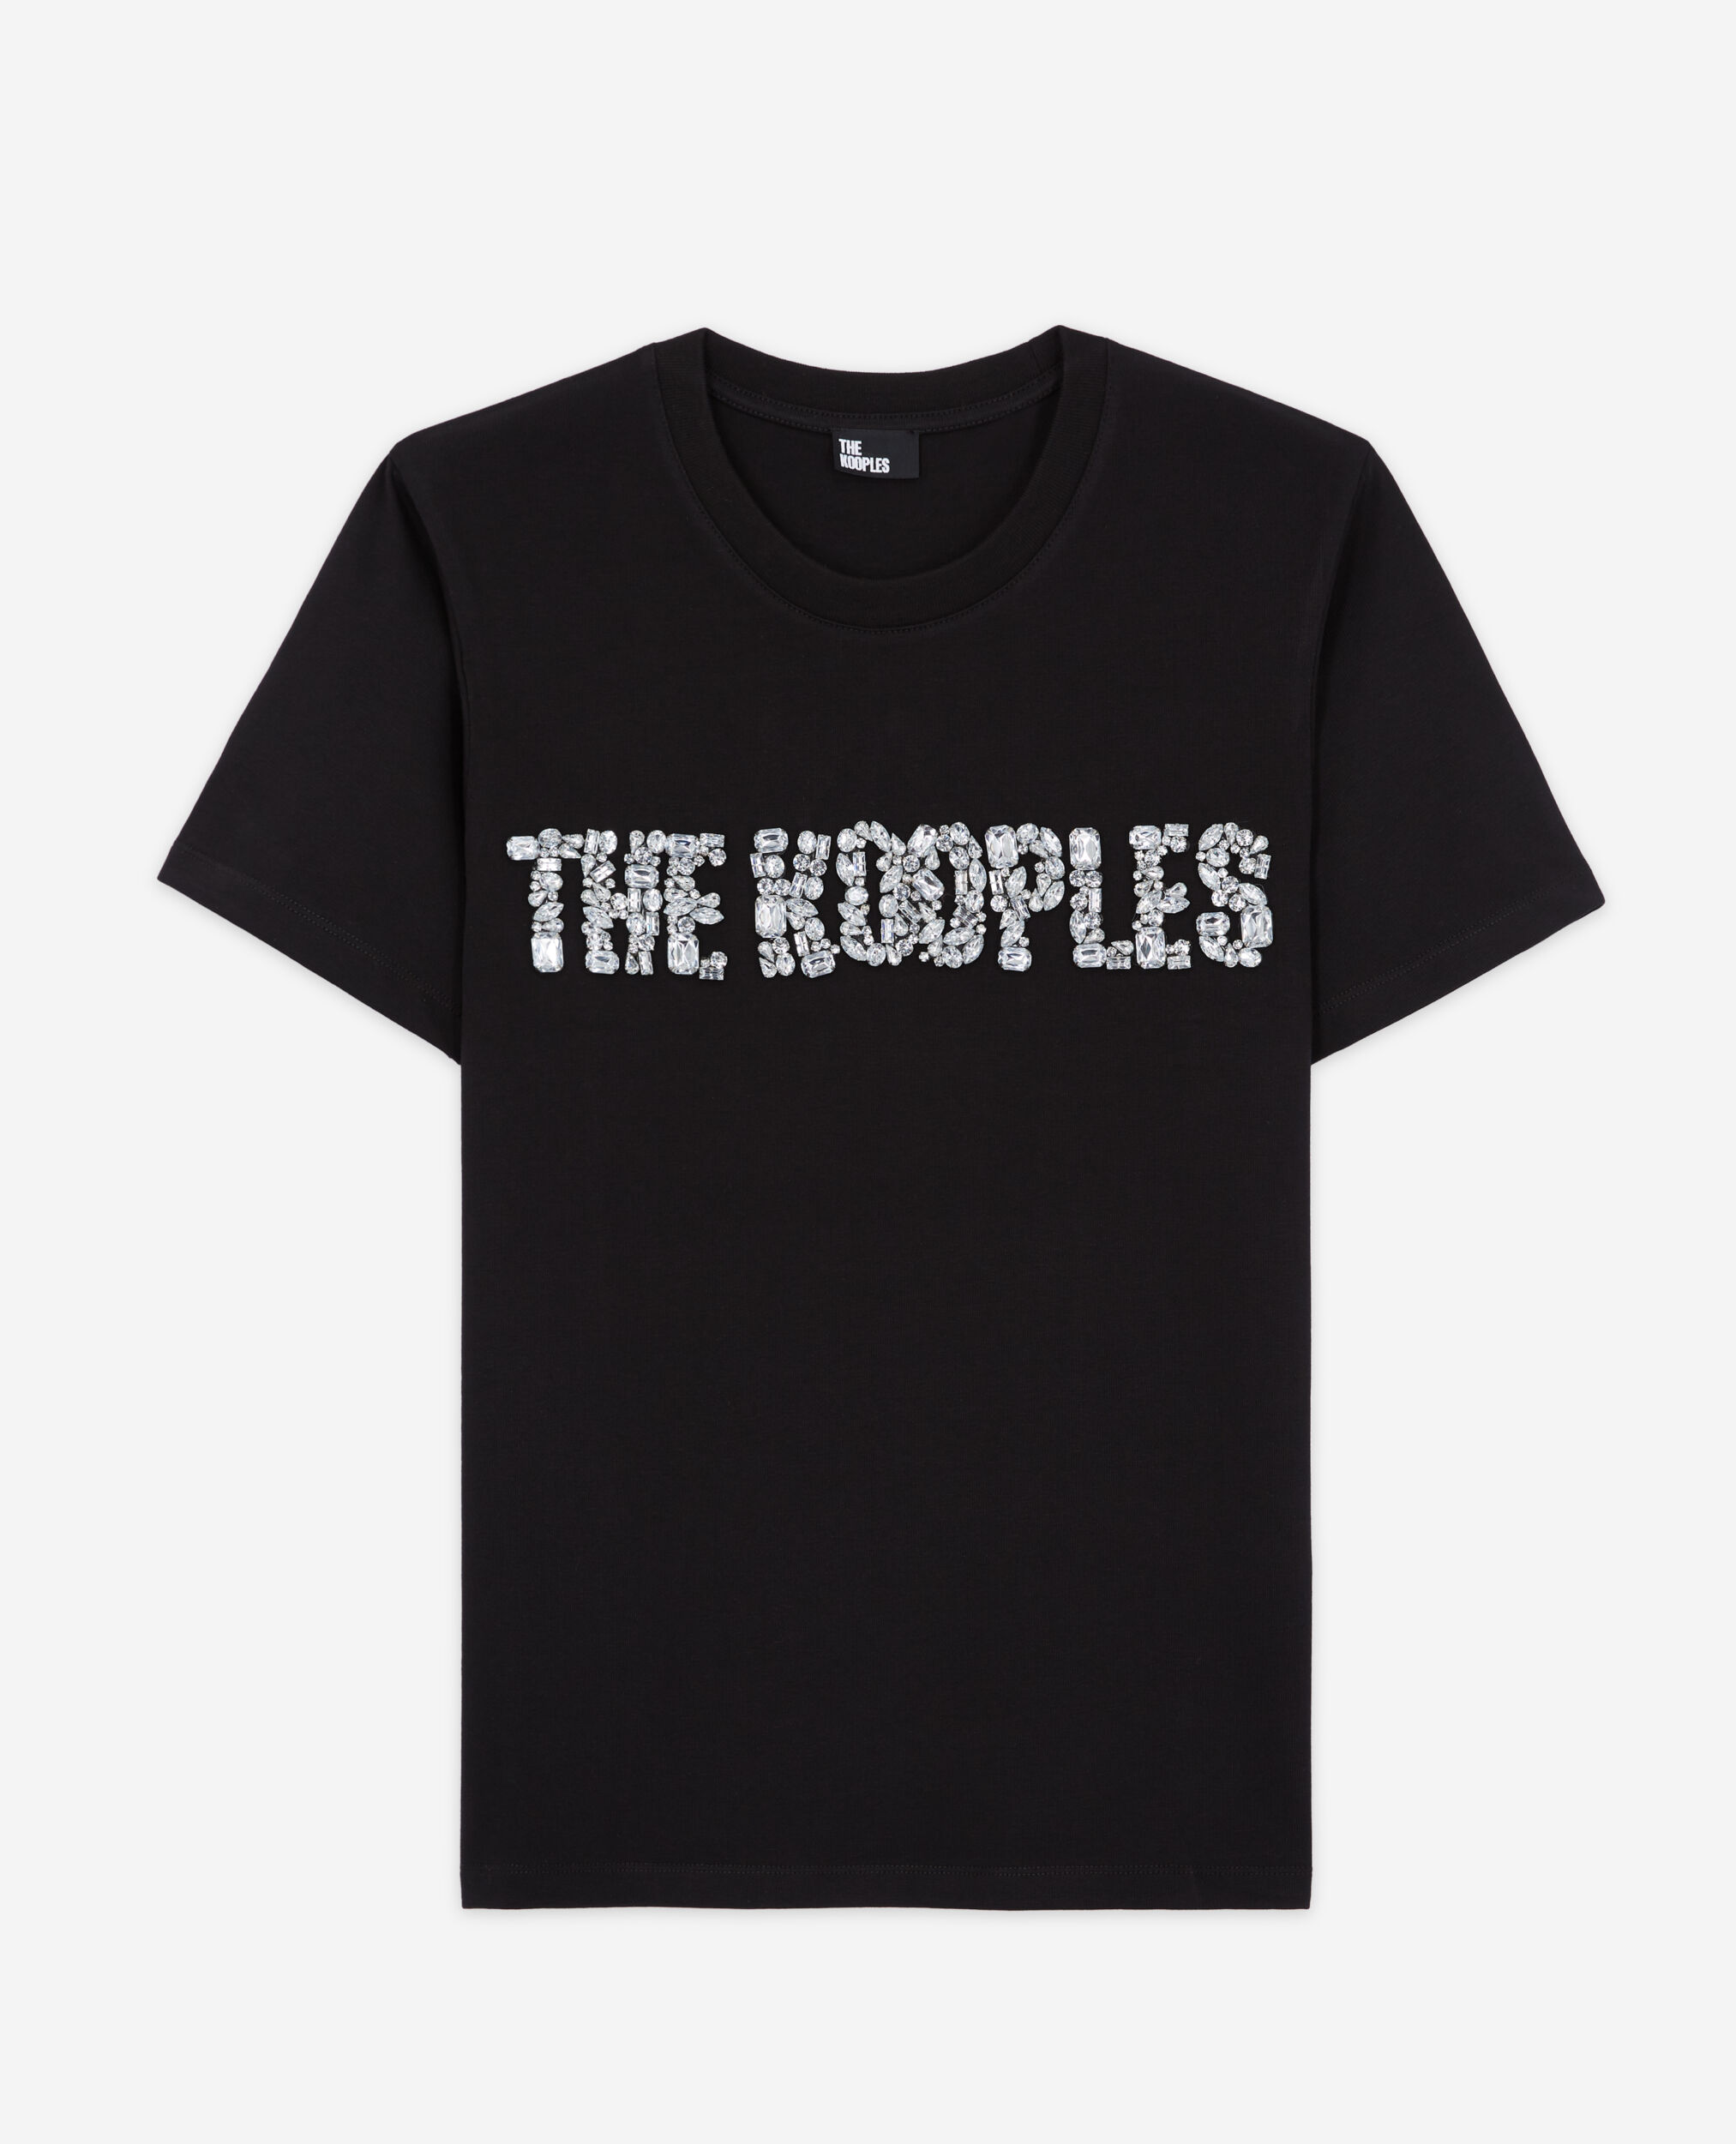 T-shirt Femme logo The Kooples, BLACK, hi-res image number null